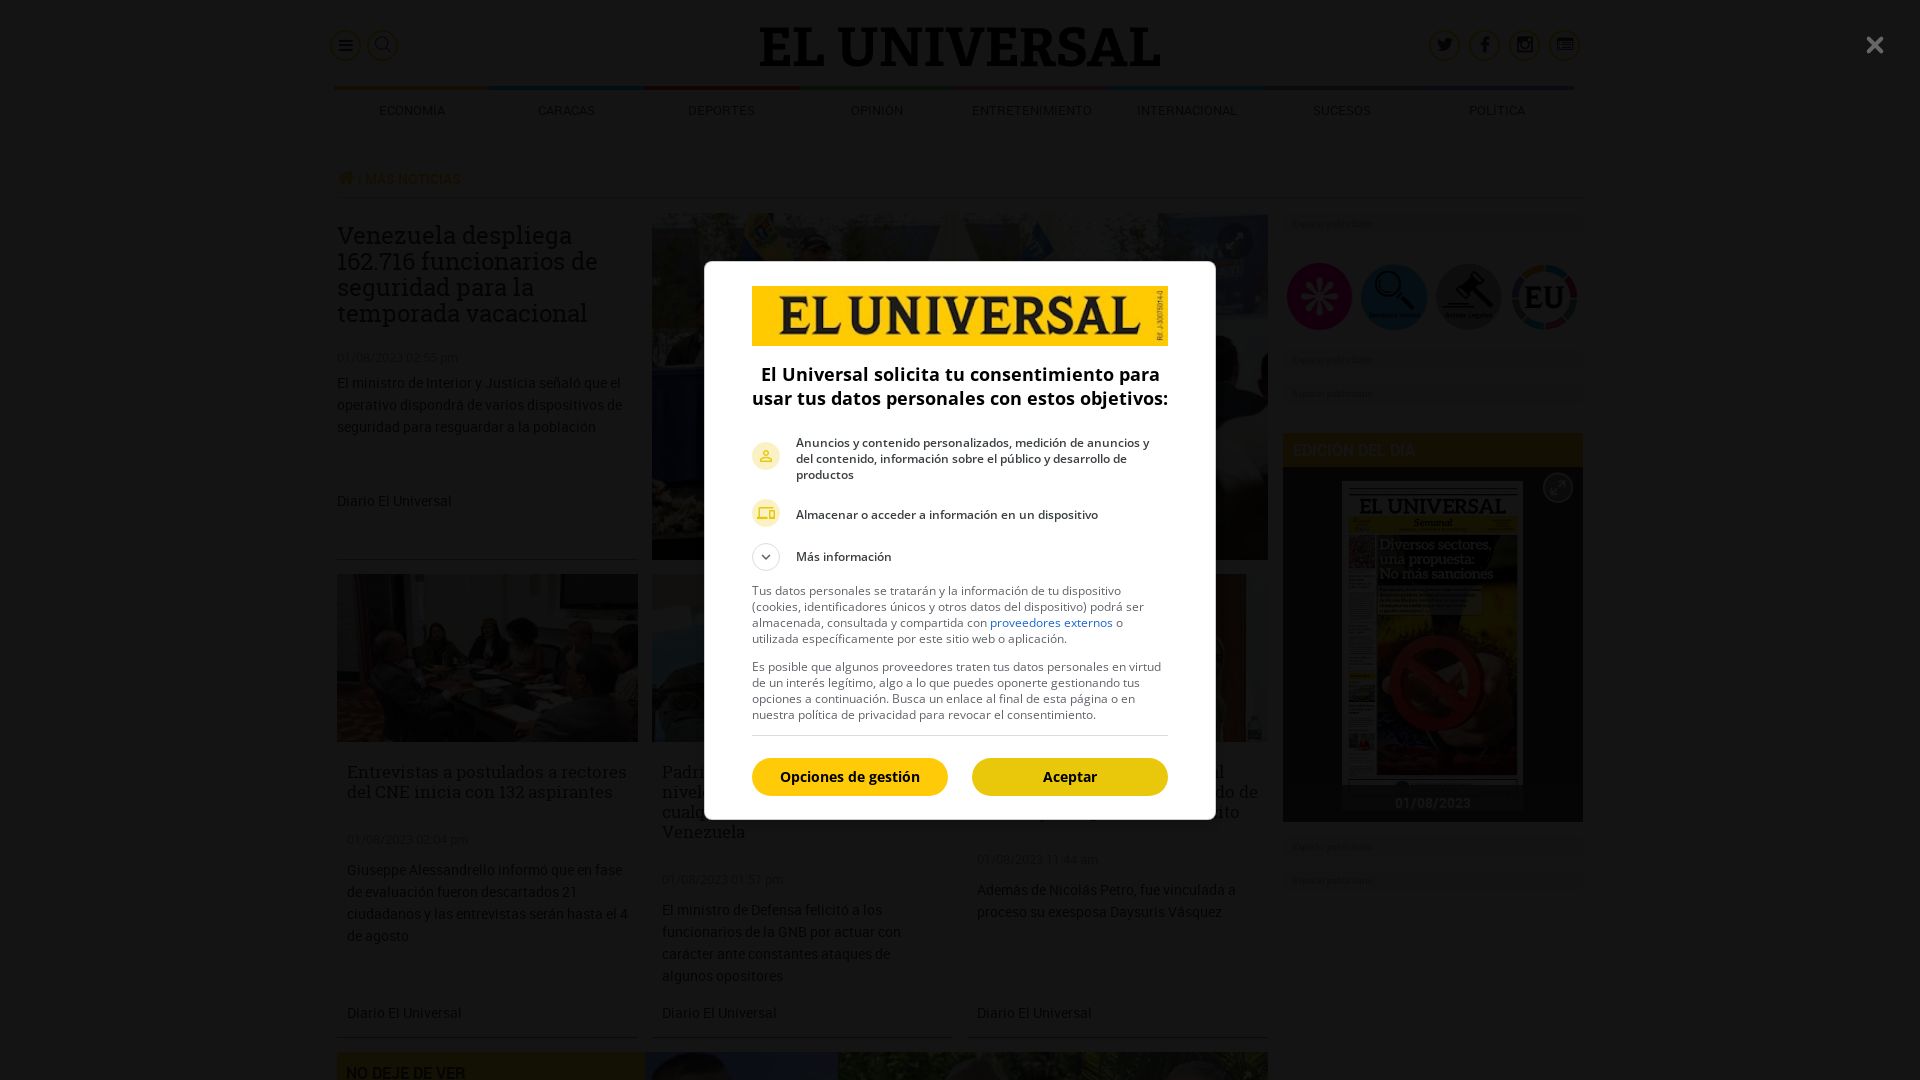 网站状态 eluniversal.com 是  在线的